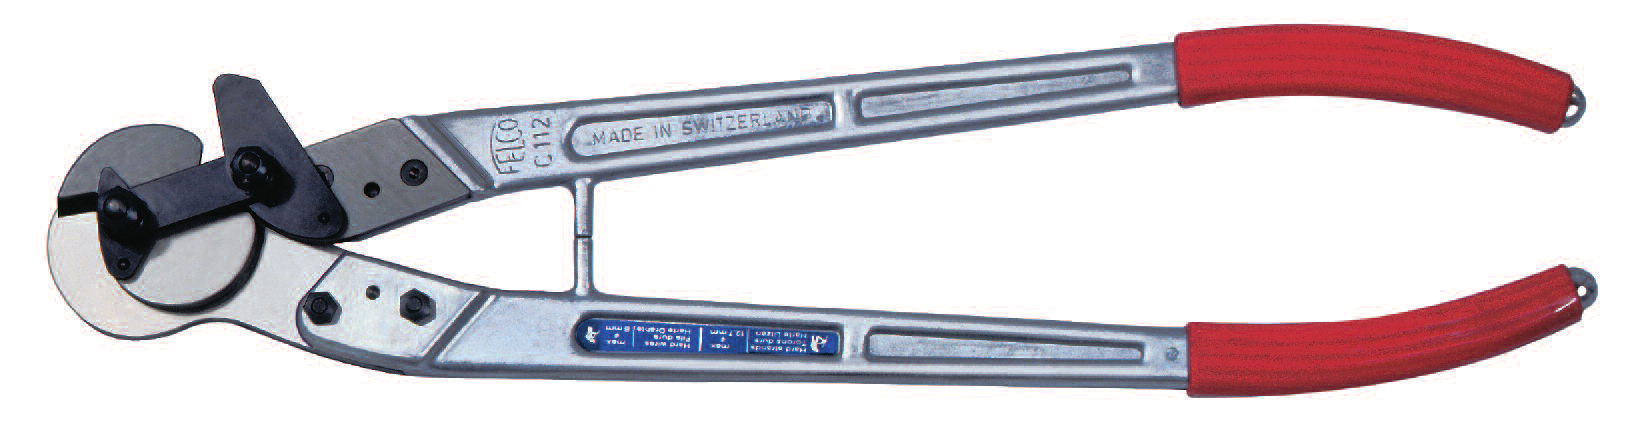 Schneidewerkzeuge SES Für Stahlkabel mit Übersetzungsnocken Kabelschere SES-108 für Stahl- und Kupferkabel - Ø 8 mm - Dank Übersetzungsnocken minimaler Kraftaufwand.